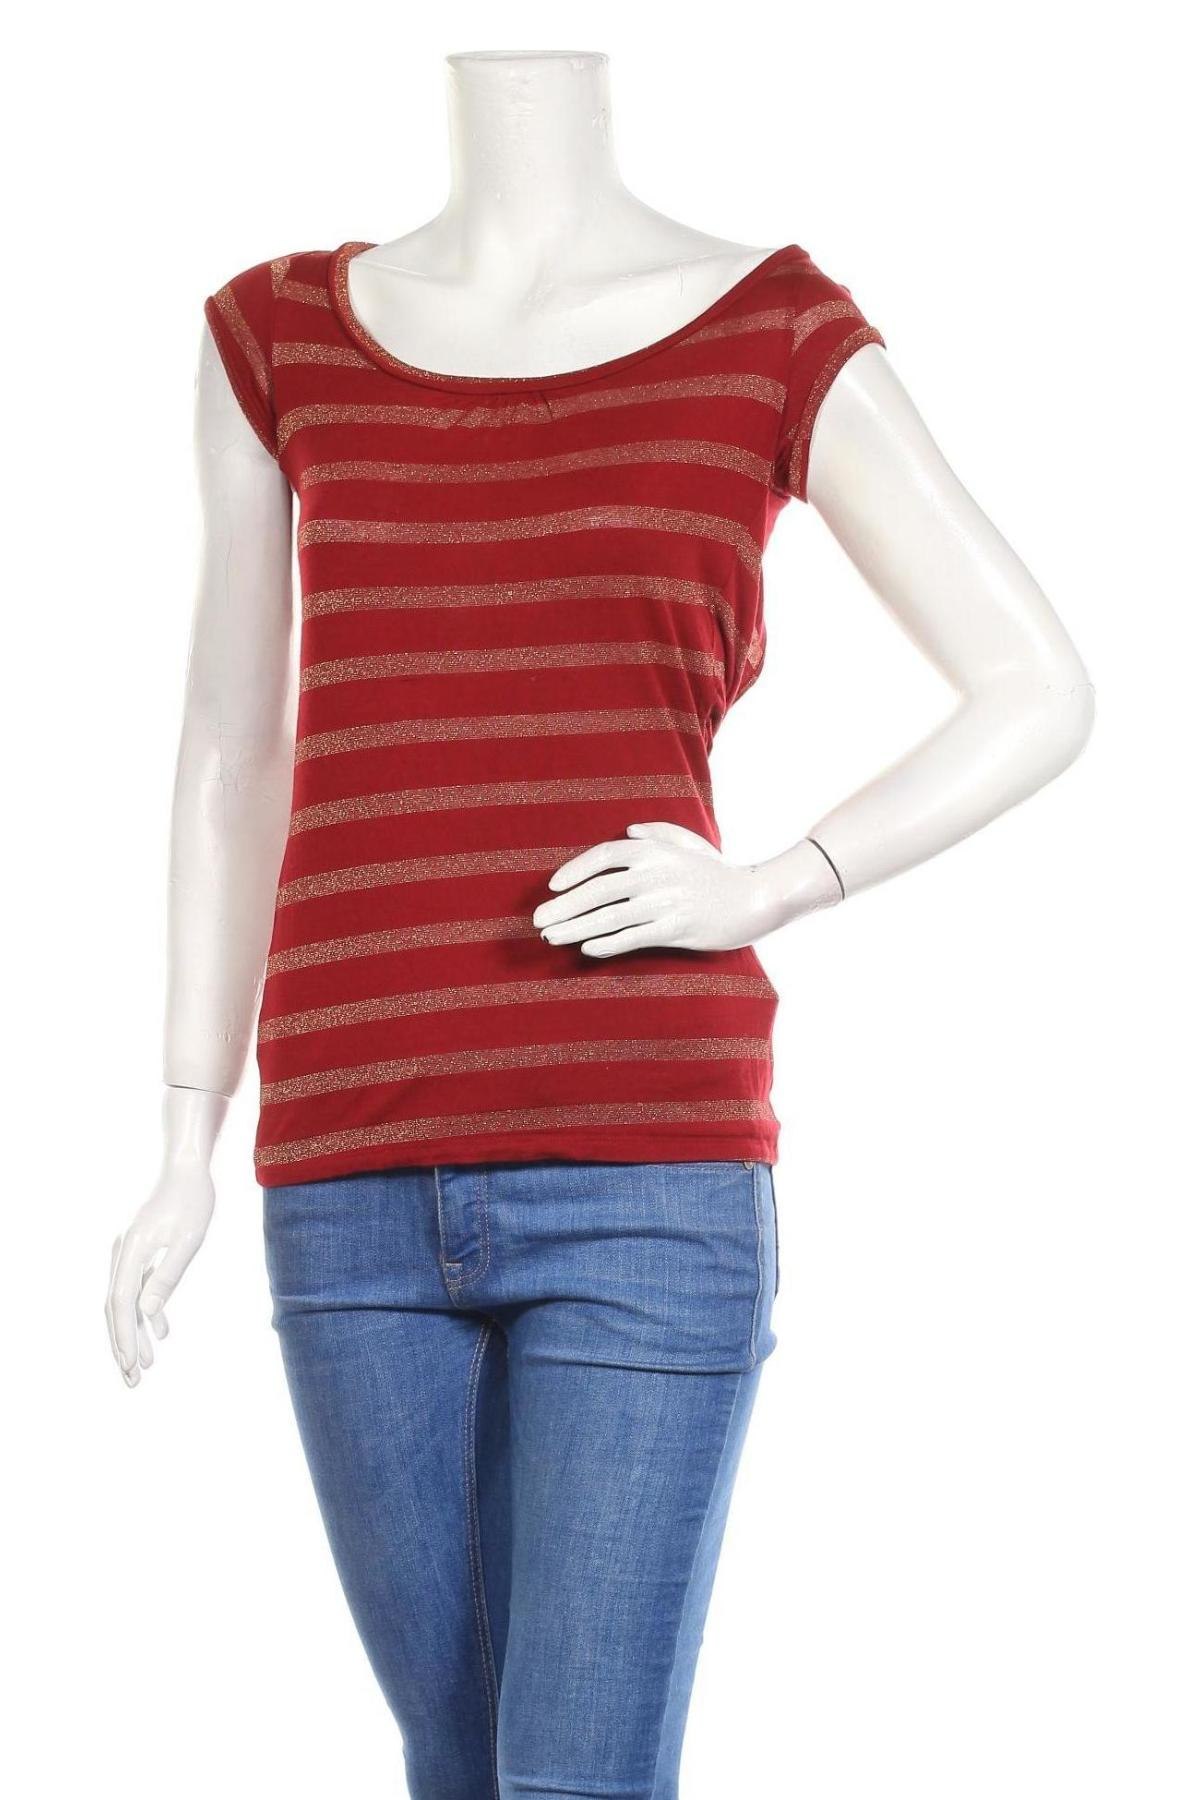 Γυναικεία μπλούζα Zara Trafaluc, Μέγεθος S, Χρώμα Κόκκινο, 80% βισκόζη, 11% πολυαμίδη, 9% μεταλλικά νήματα, Τιμή 10,39 €